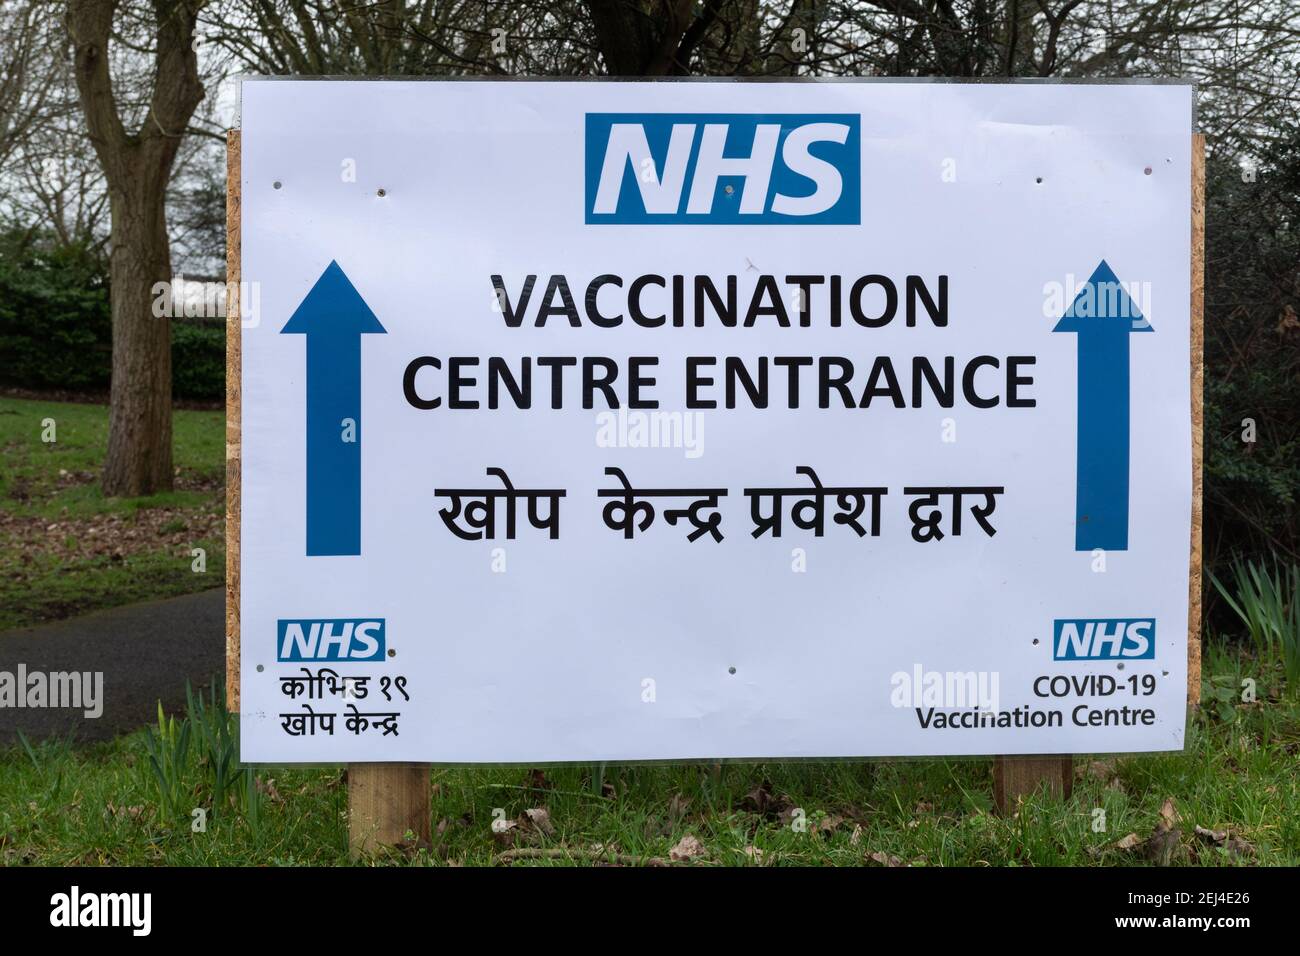 Farnborough, Hampshire, Inghilterra, Regno Unito. 21 Febbraio 2021. Il programma di vaccinazione del Regno Unito Coronavirus covid-19 sta progredendo bene in generale, ma ci è stato un assorbimento più basso del vaccino tra le persone ZOPPATE, compresa la comunità dell'Asia meridionale. Nella foto è raffigurato un segno bilingue di un centro di vaccinazione in lingua inglese e nepalese in un'area dell'Hampshire con una grande comunità nepalese. Foto Stock